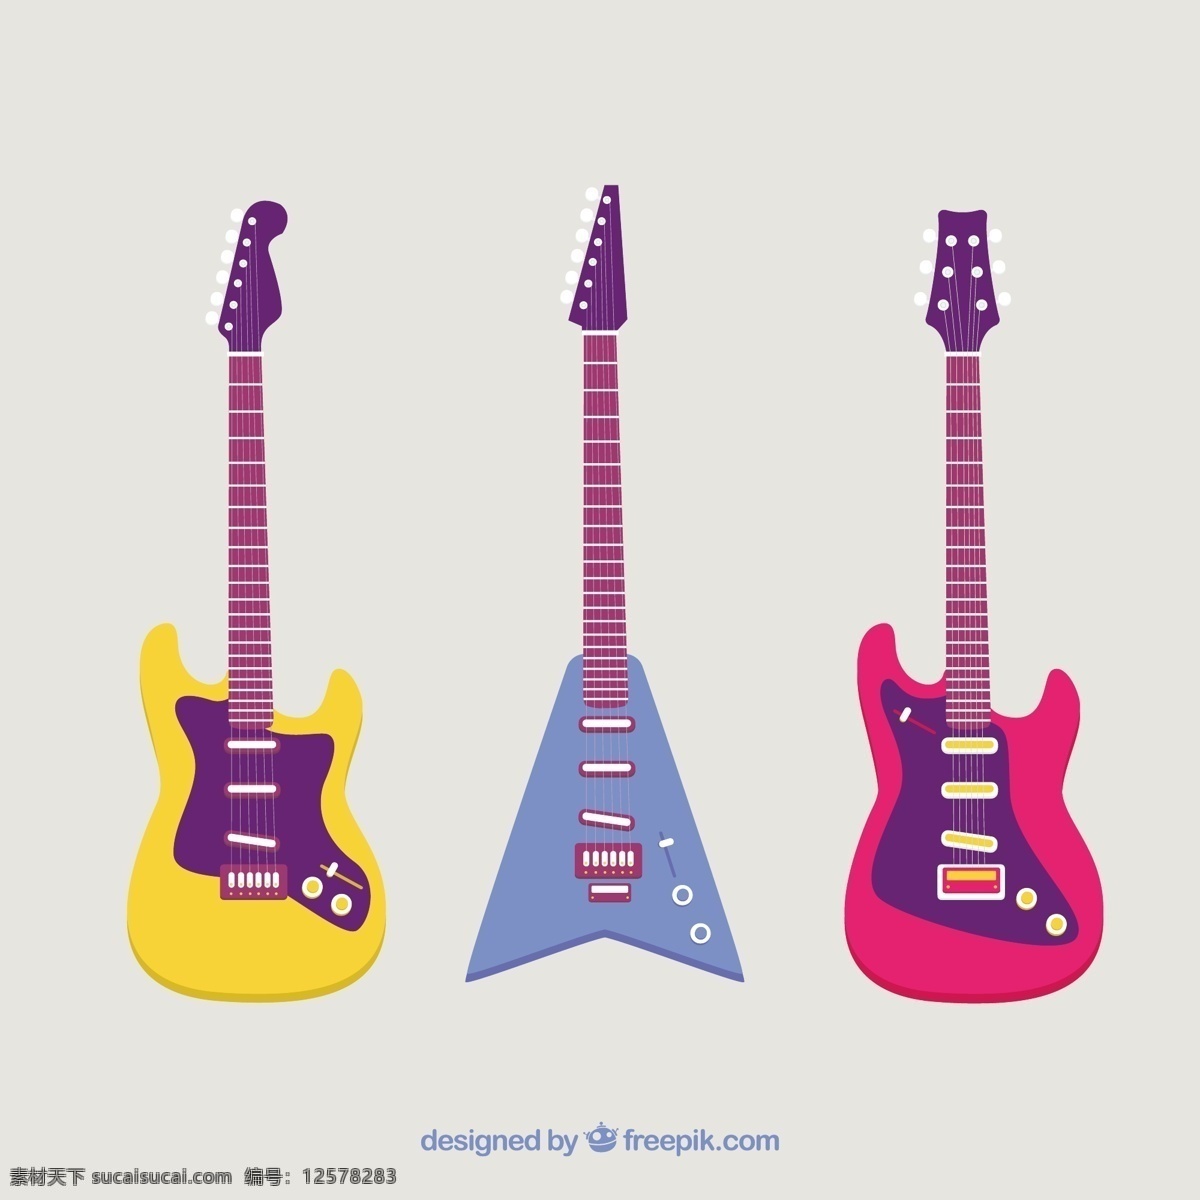 彩色 平板 电吉他 组 音乐 色彩 吉他 摇滚 平面设计 声音 音乐会 演奏 电 乐器 歌曲 摇滚乐 成套 设备 旋律